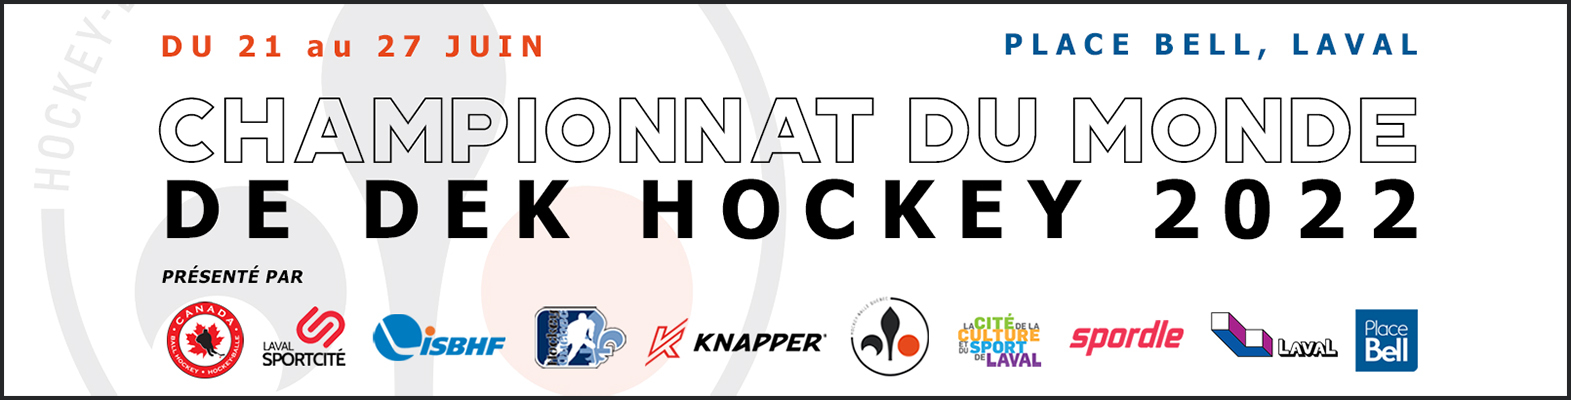 Championnat du Monde de Dek Hockey 2022 - Laval